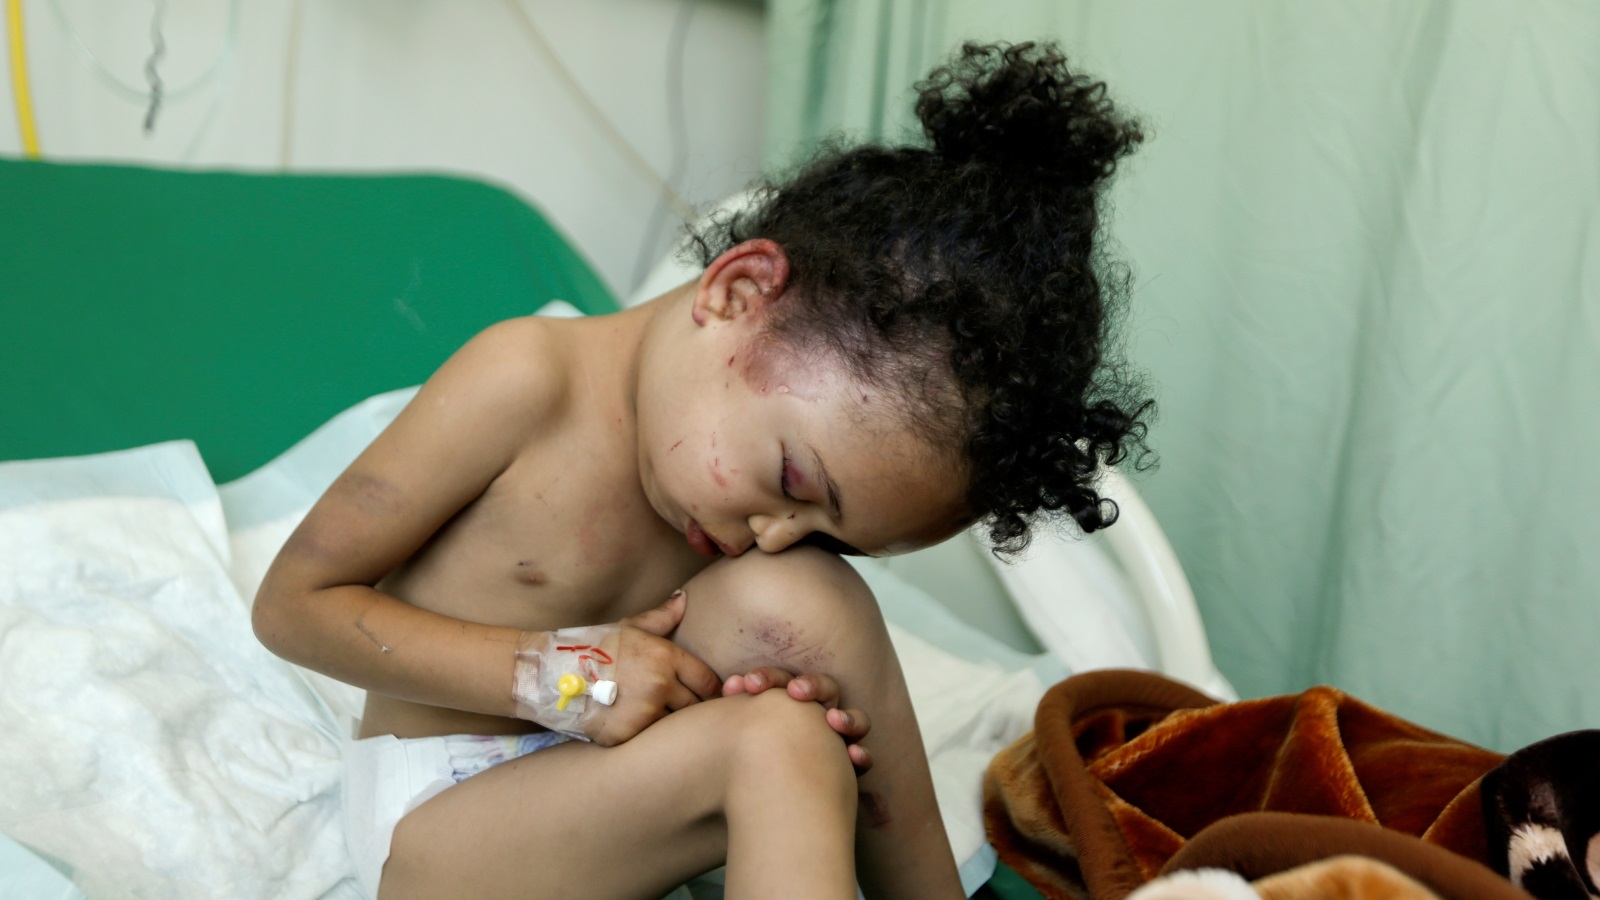 الطفلة بثينة نجت بعد تعرض منزلها للقصف الجوي ومقتل عدد من أفراد أسرتها في صنعاء (رويترز)